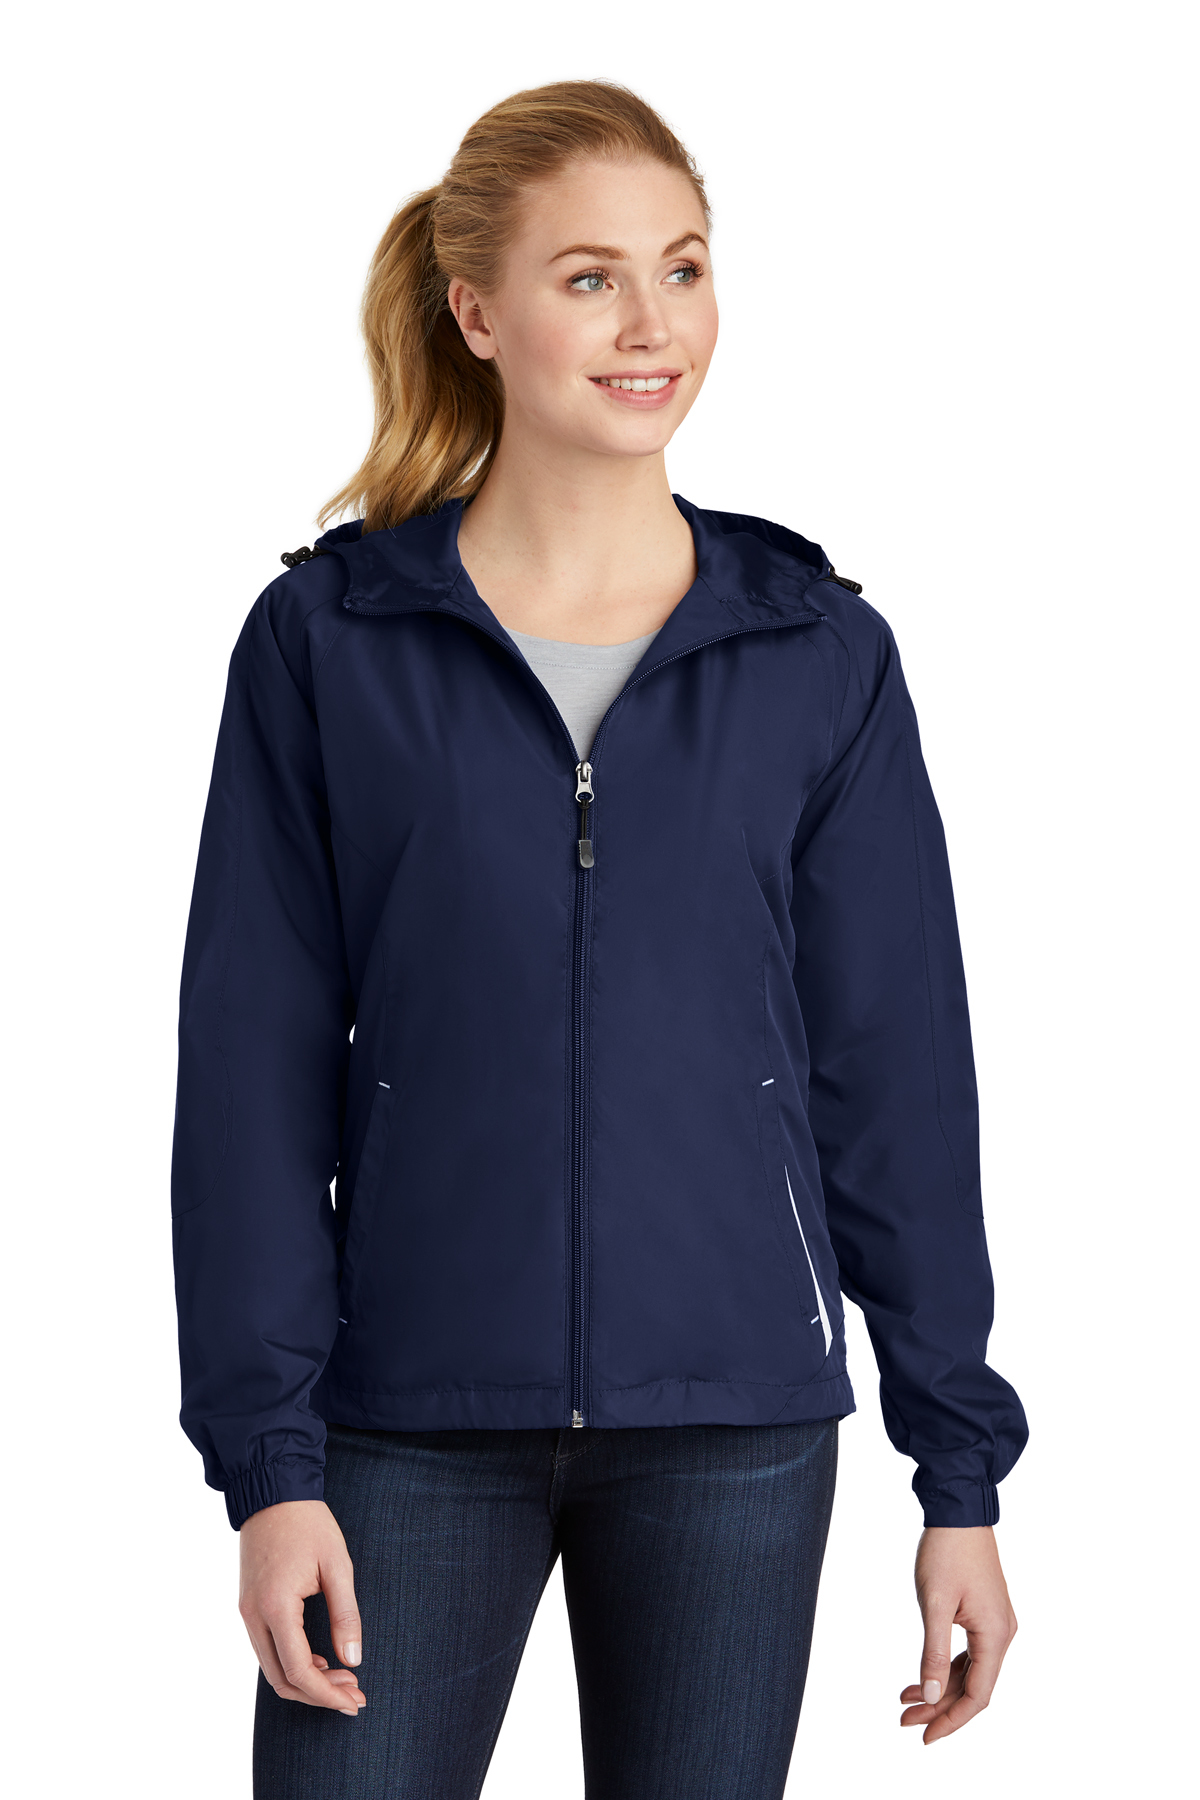 Raglan | Sport-Tek Product | Ladies Jacket Sport-Tek Colorblock Hooded